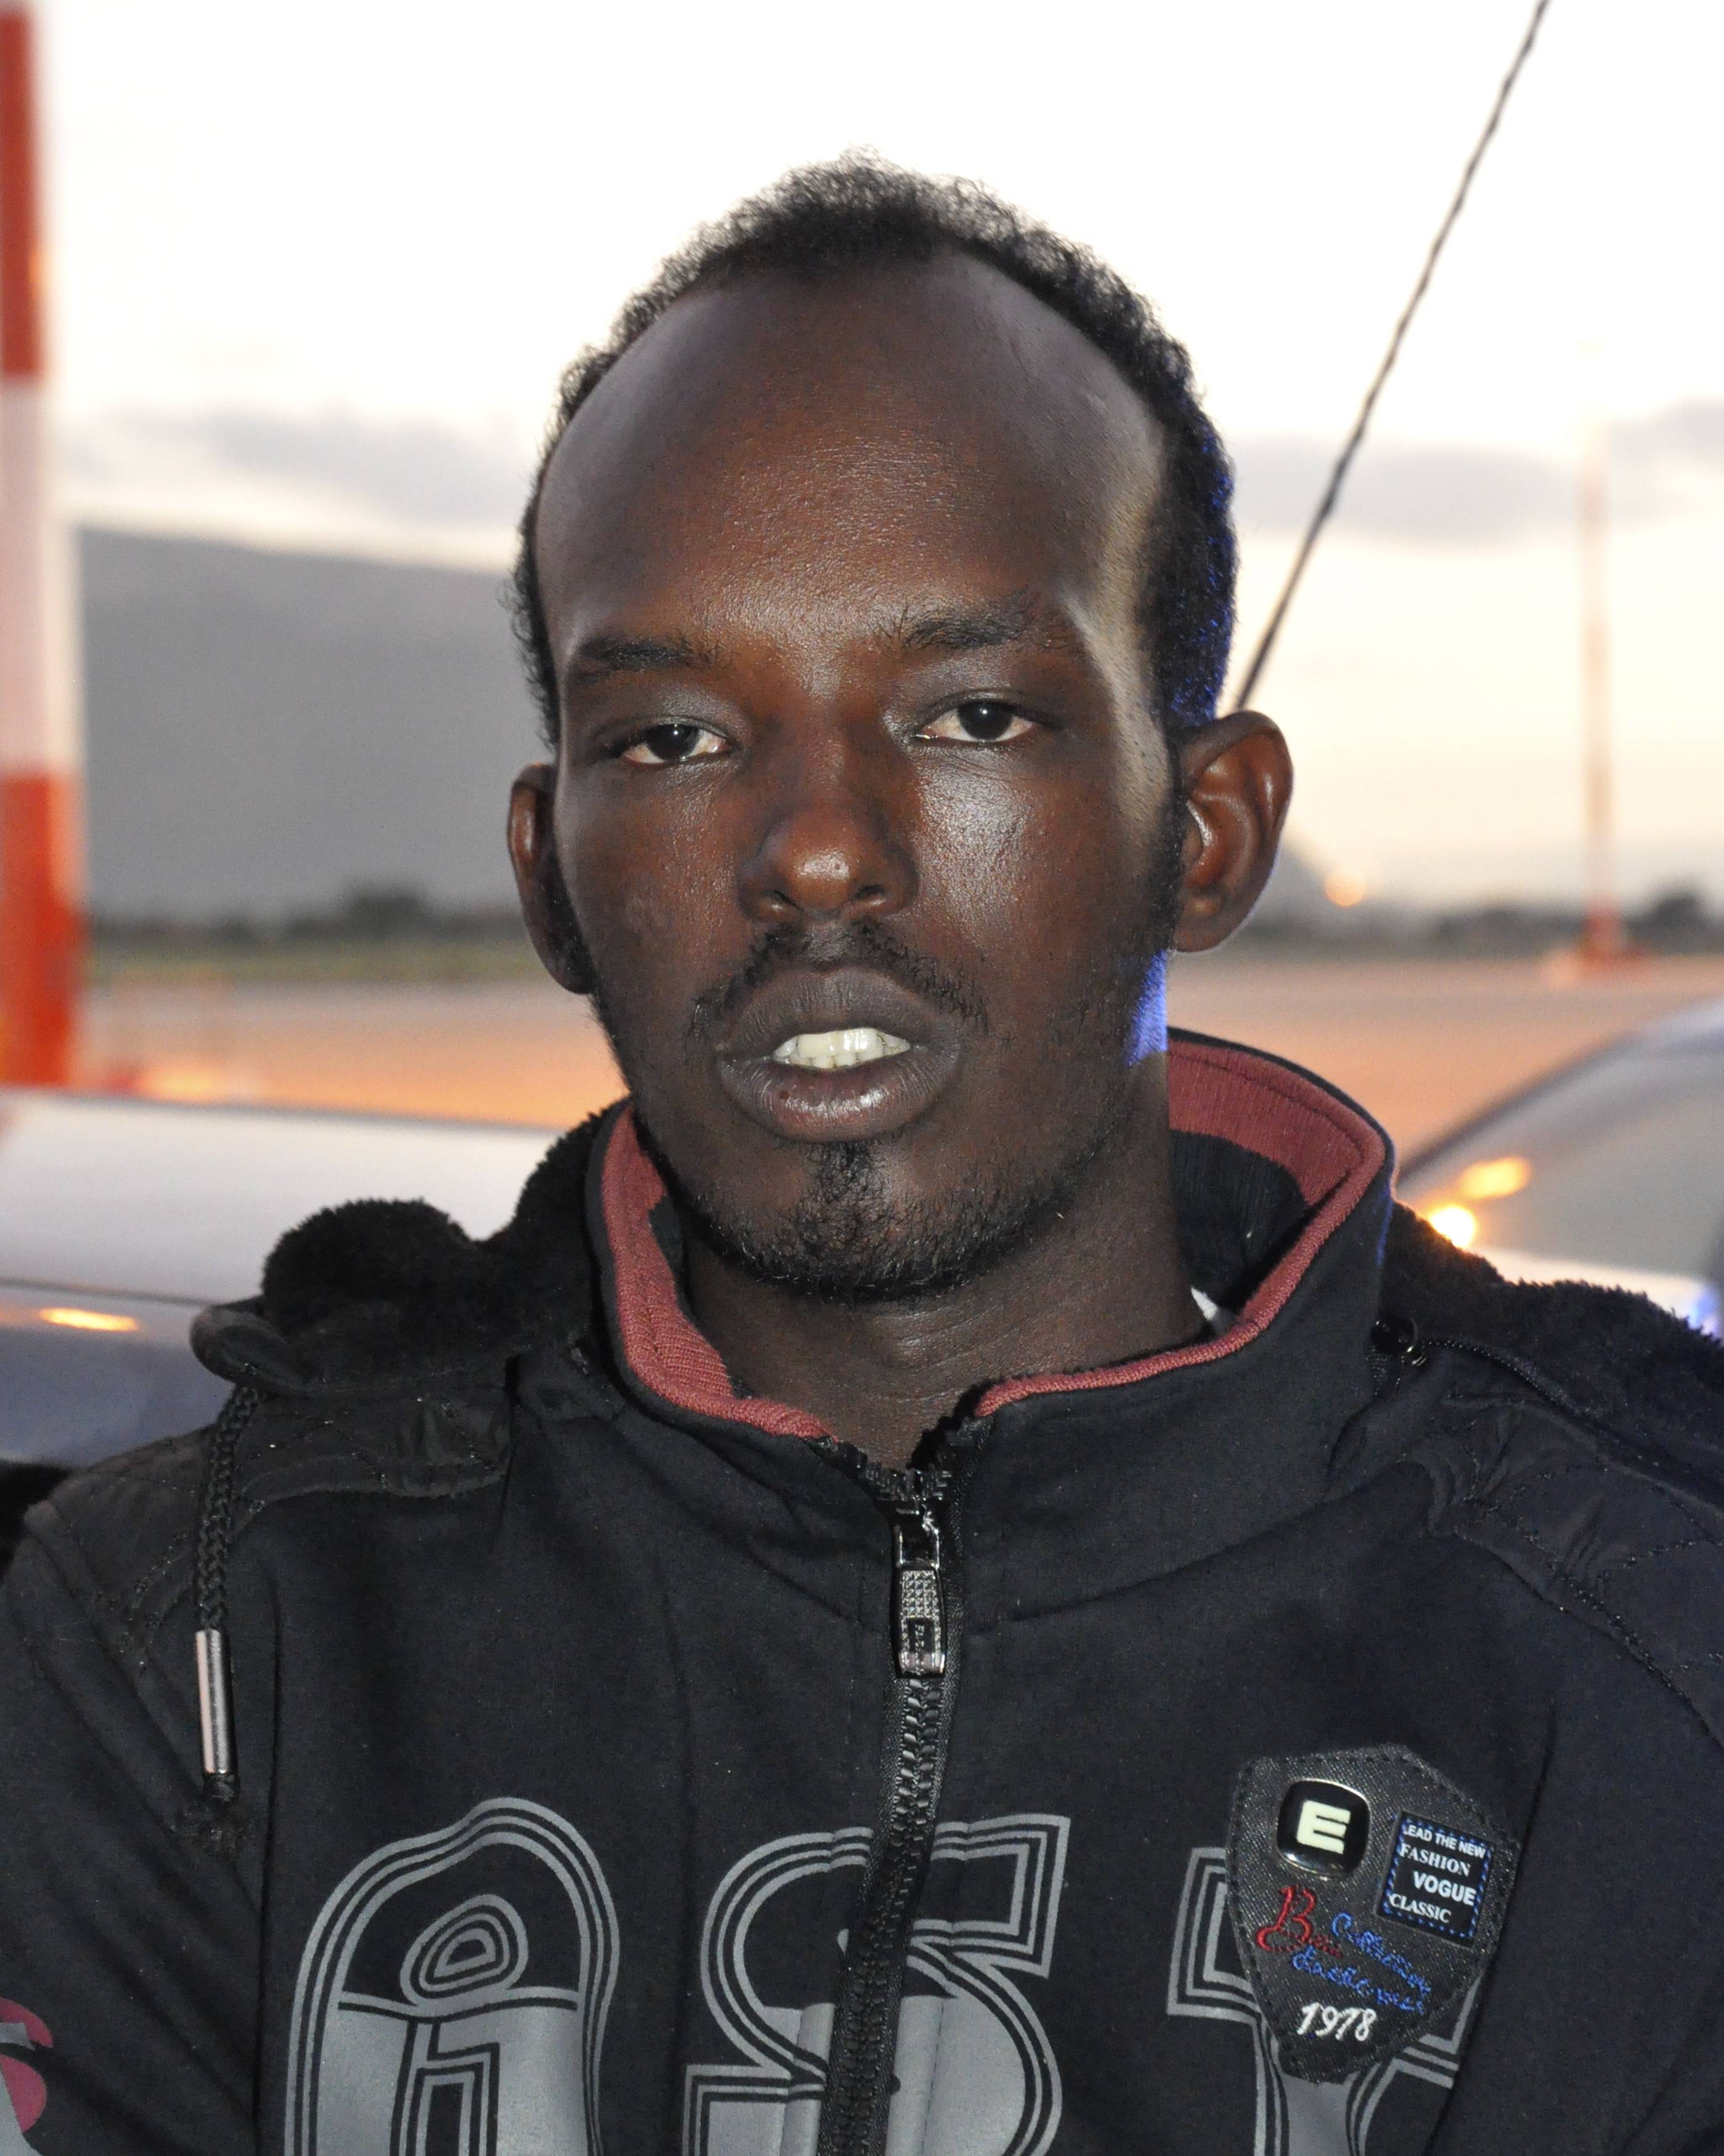 Αυτός είναι ο 24χρονος Σομαλός που συνελήφθη ως ύποτος για συμμετοχή στο κύκλωμα διακίνησης μετναστών - ΦΩΤΟ REUTERS